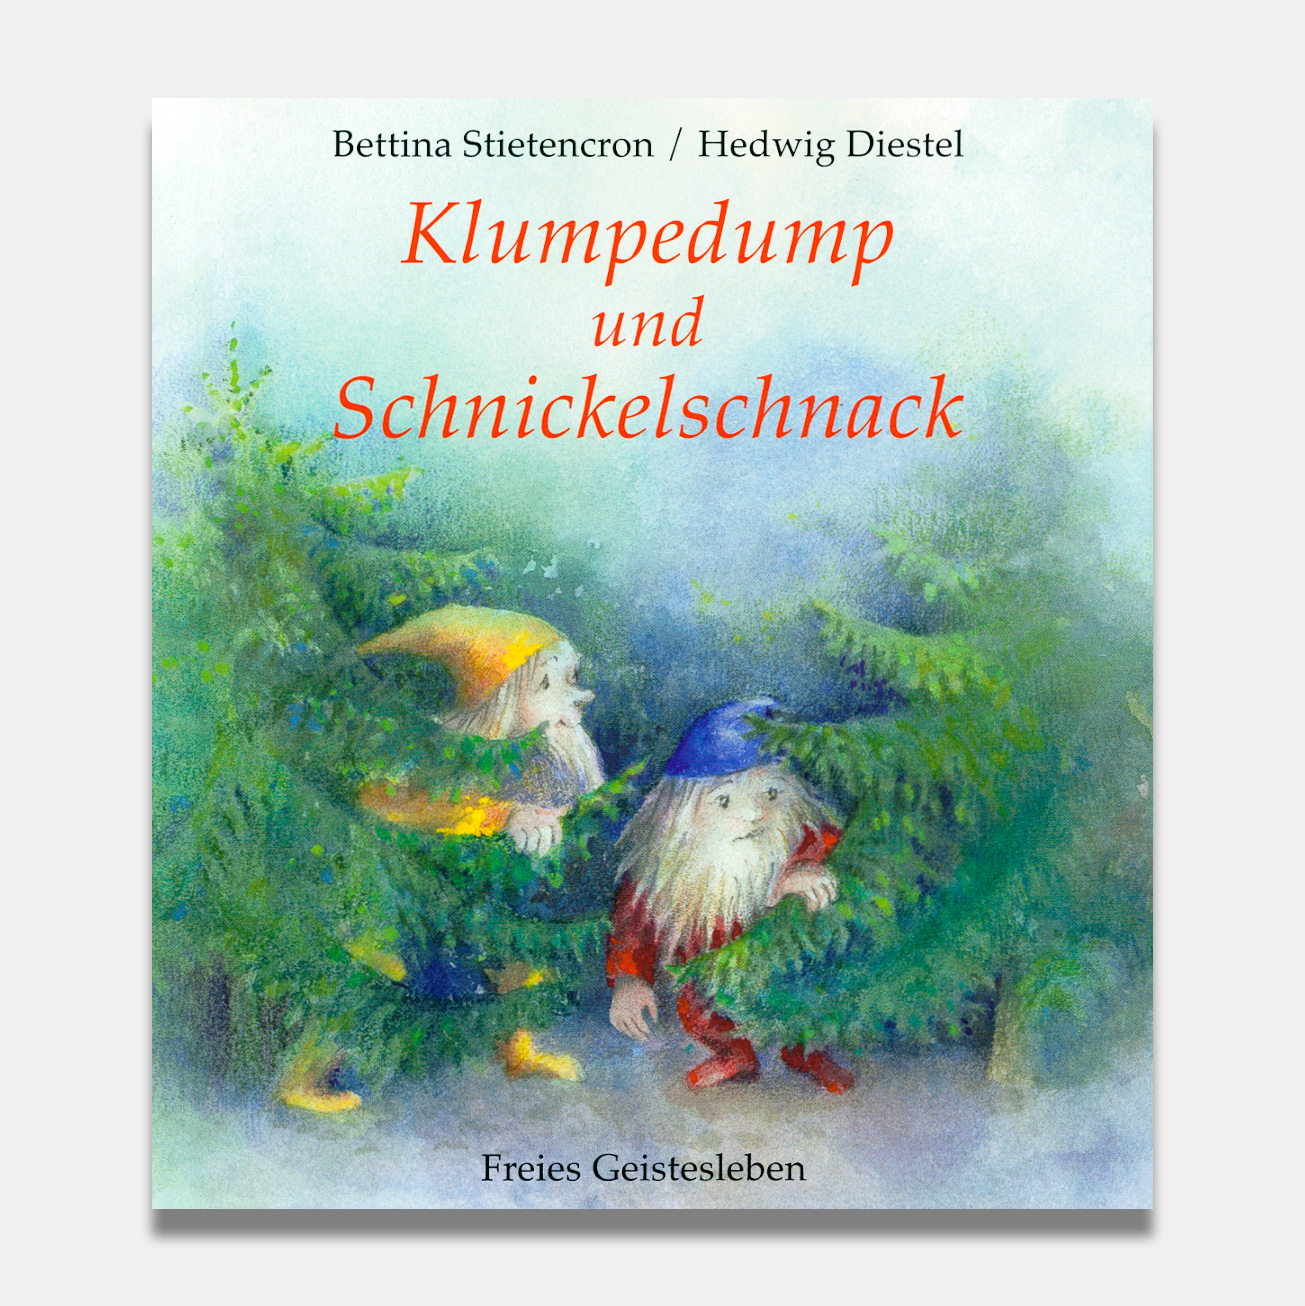 Klumpedump und Schnickelschnack  H. Diestel, B. Stietencron